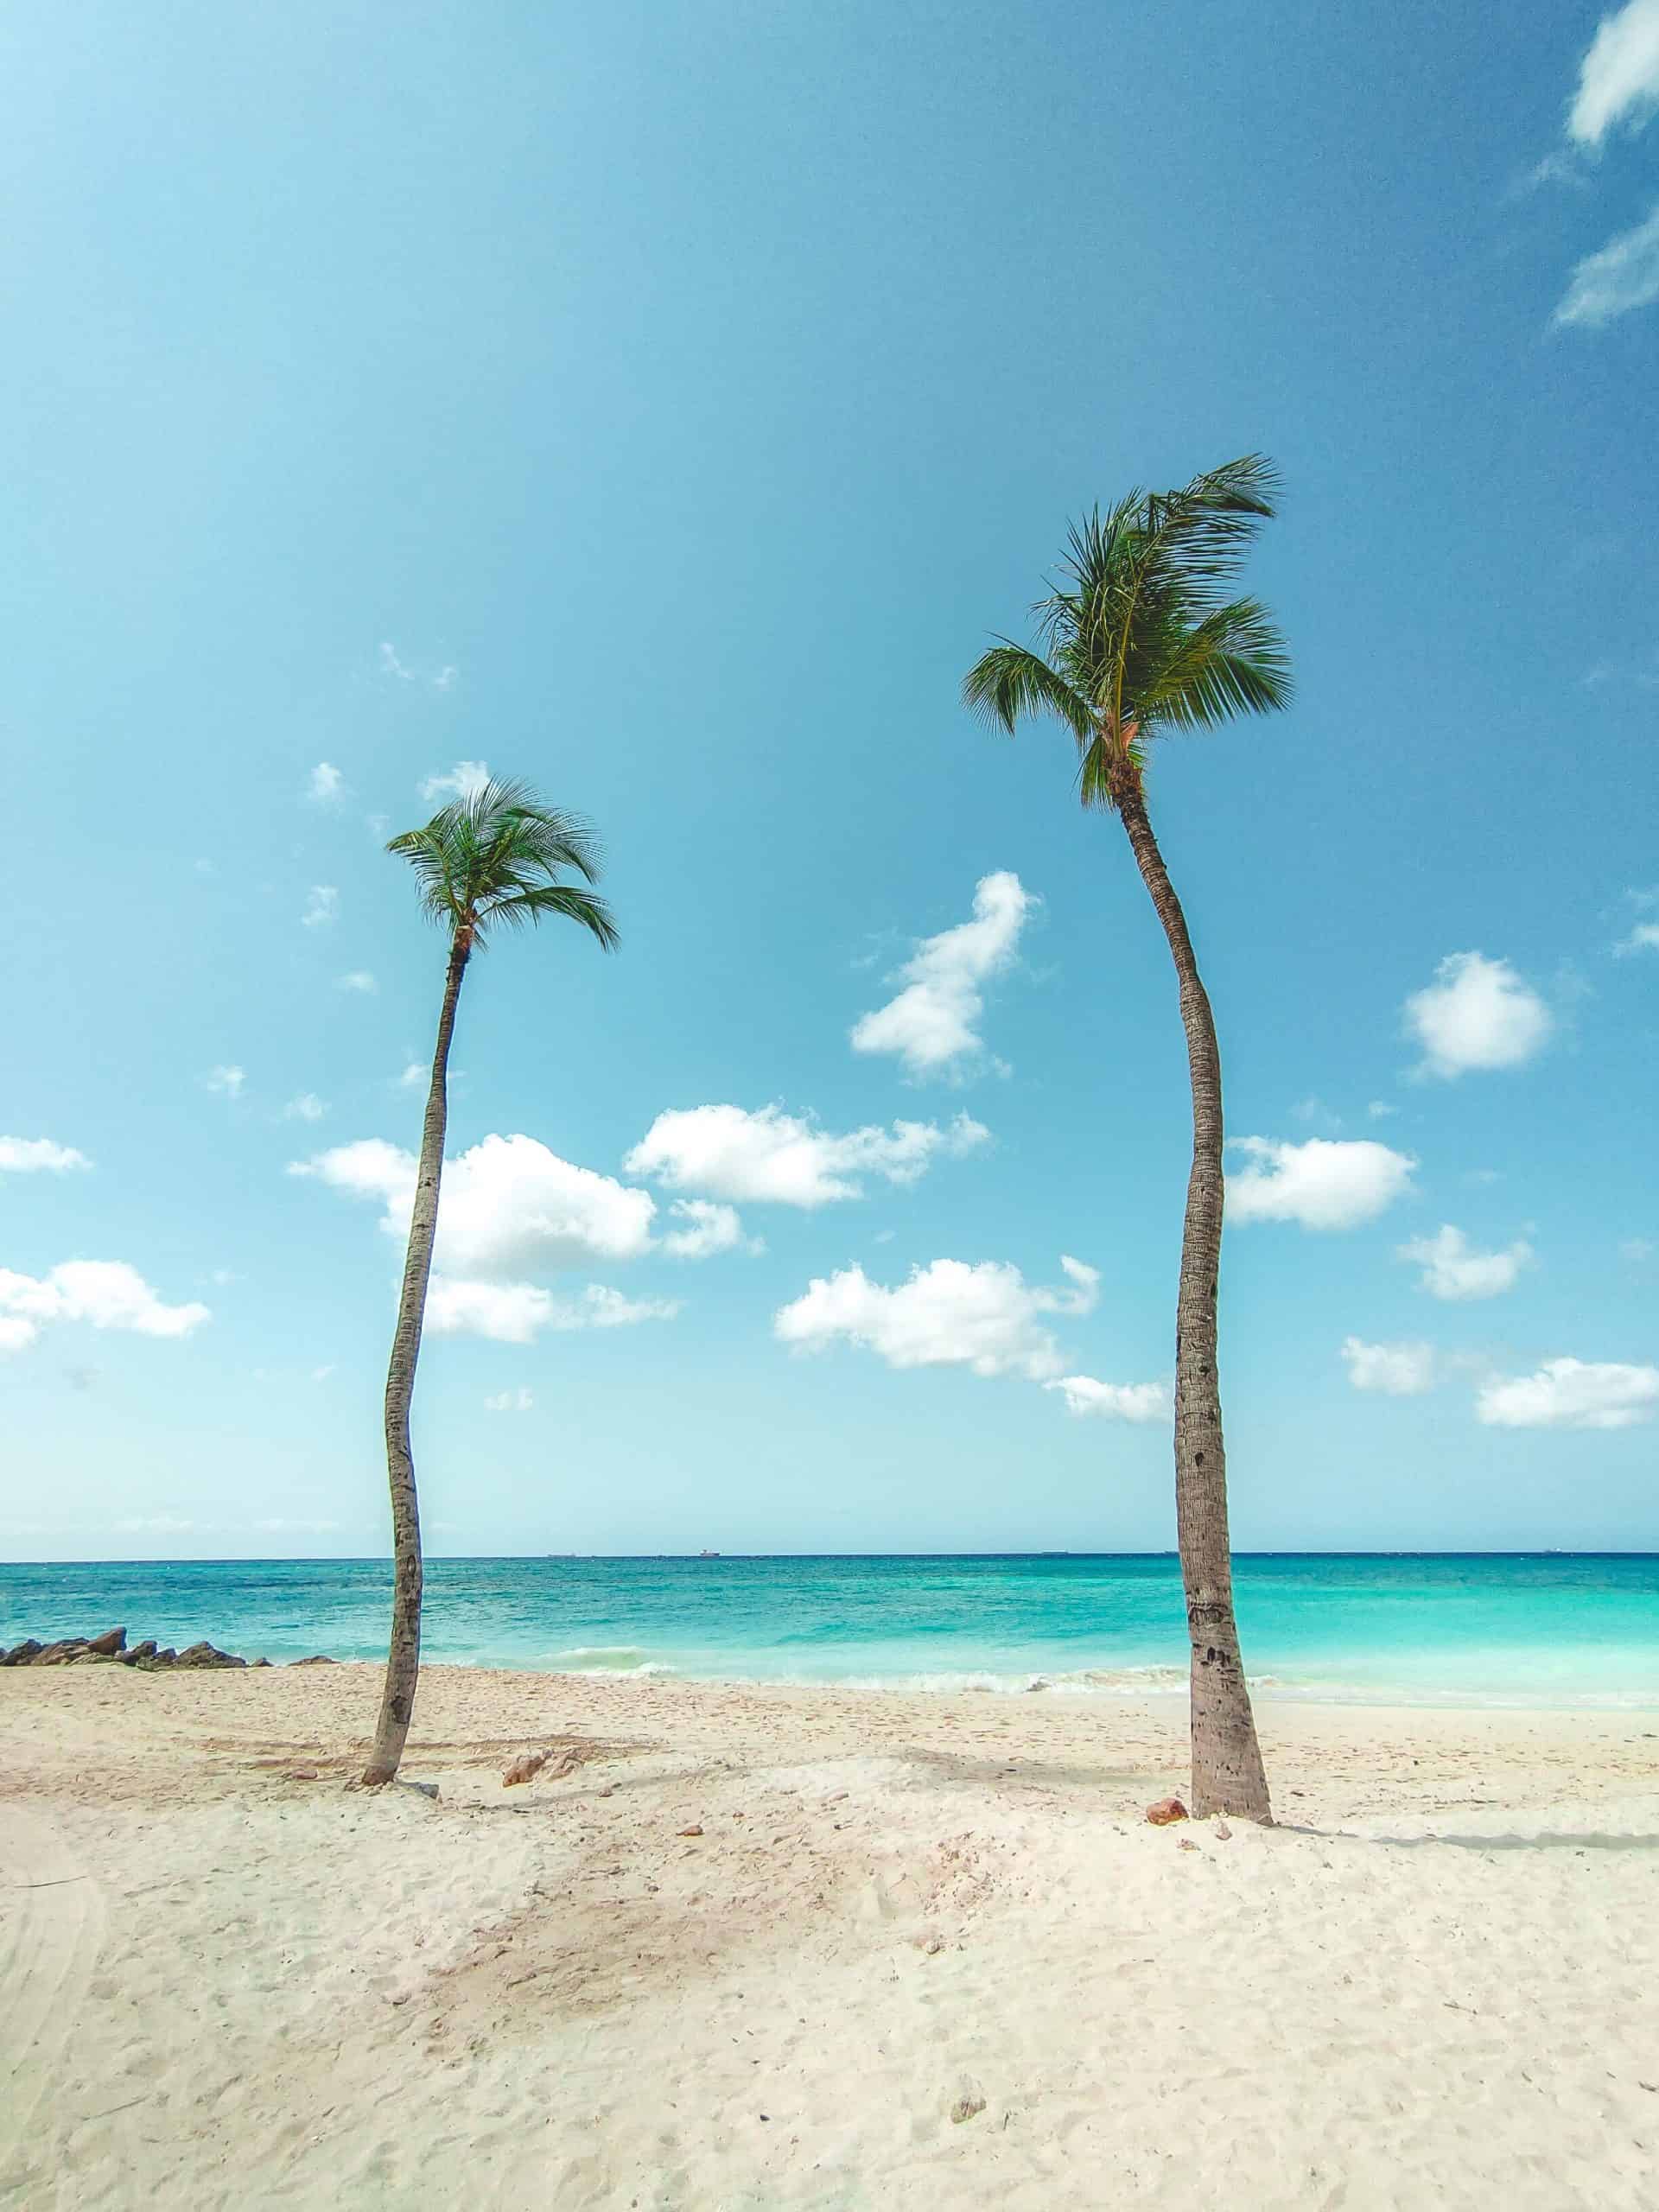 Barbados vs Aruba - Is Barbados the Better Caribbean Trip?